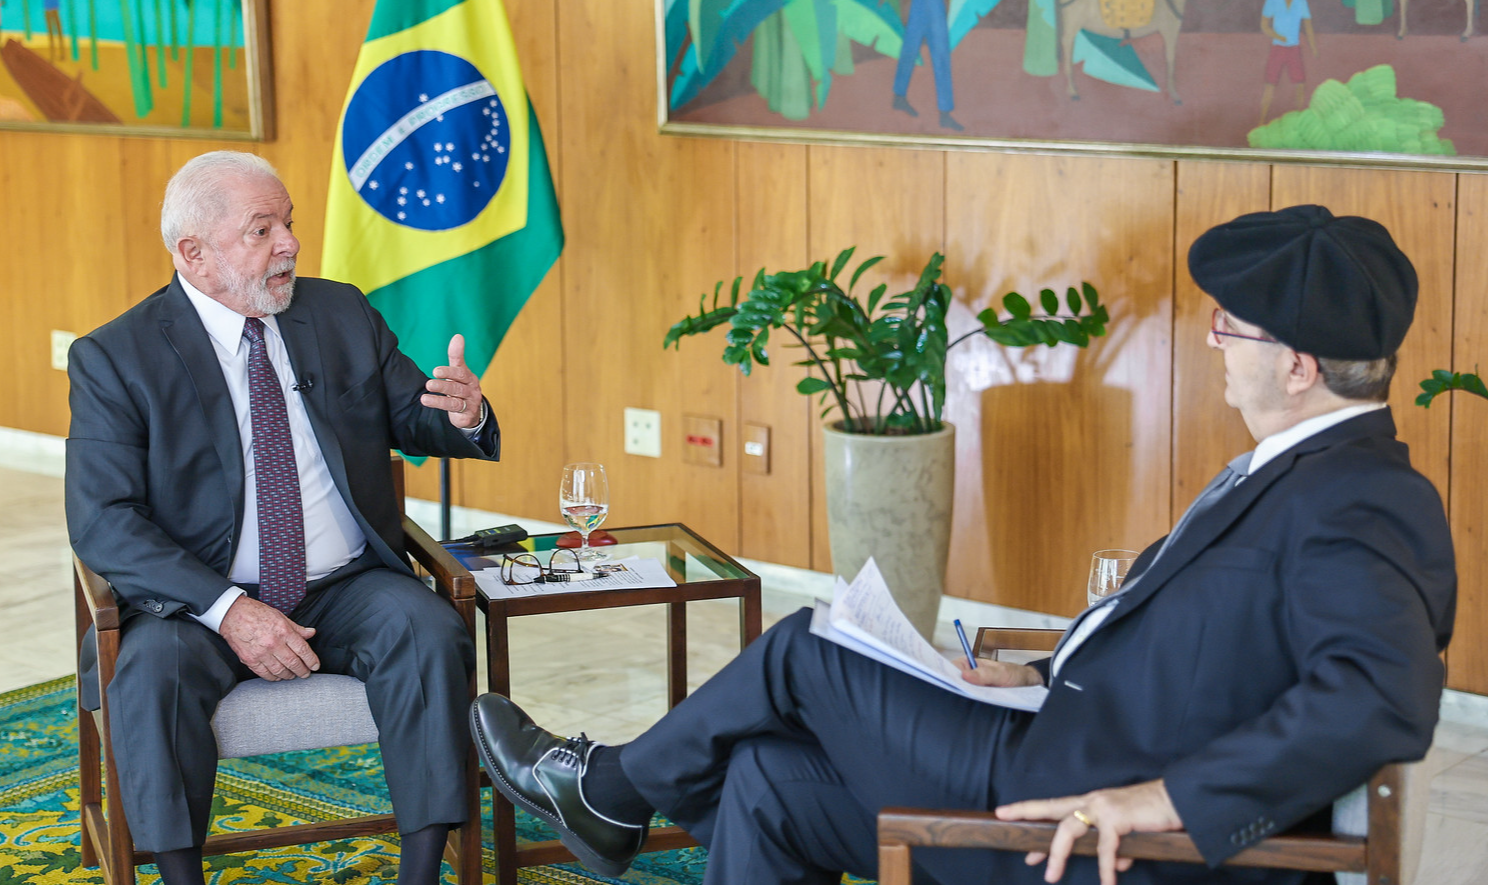 BC tem que baixar juros para país voltar a ter crédito e crescimento, disse o presidente. Ele também classificou como “loucura” os dividendos bilionários da Petrobras